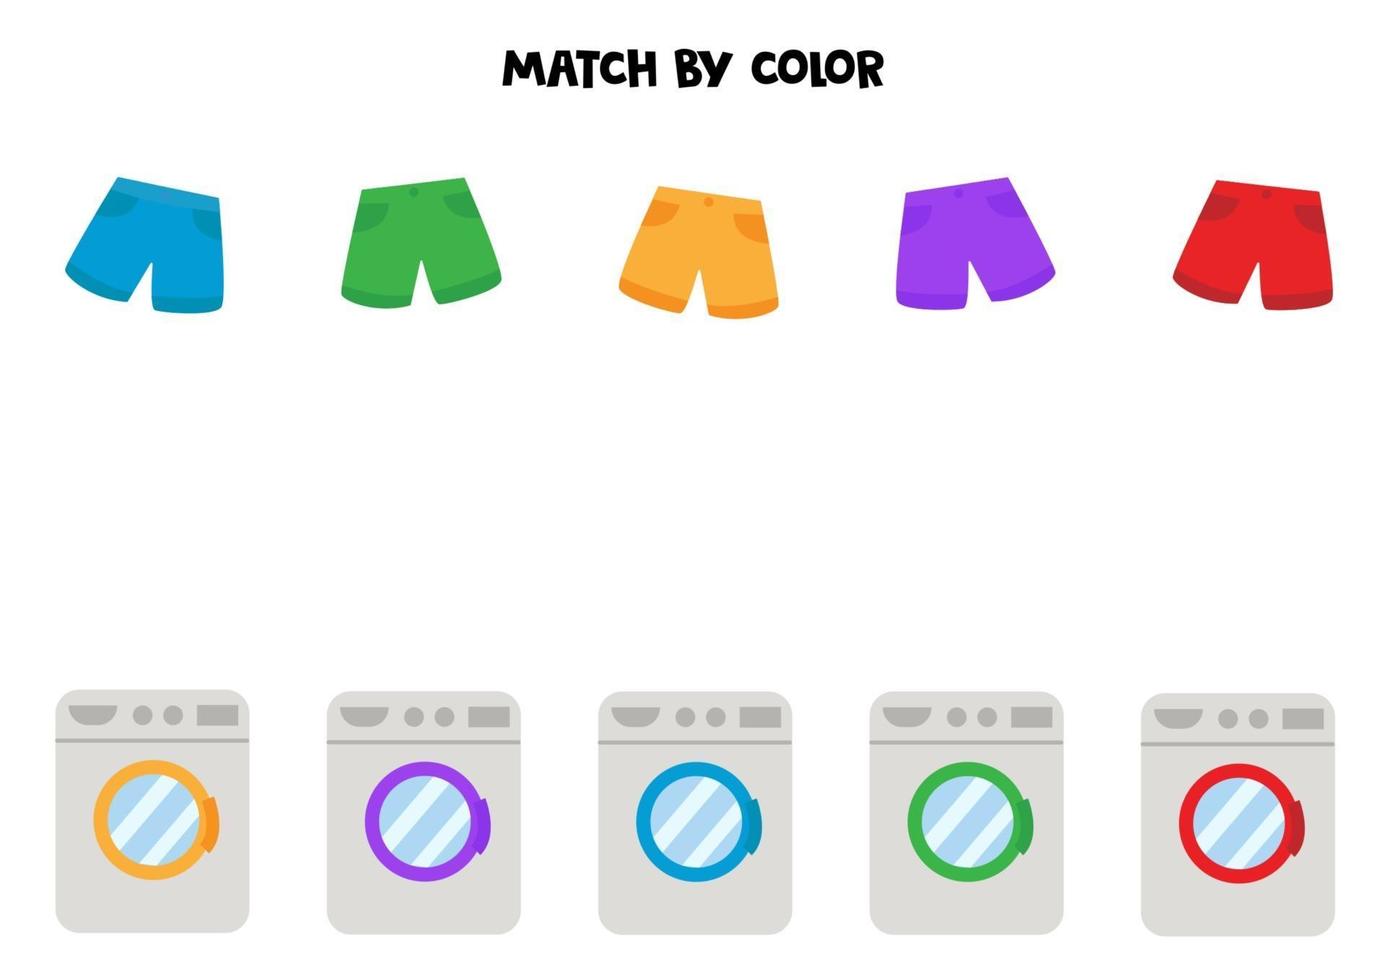 matchande spel för barn. tvättmaskin och shorts efter färg. vektor